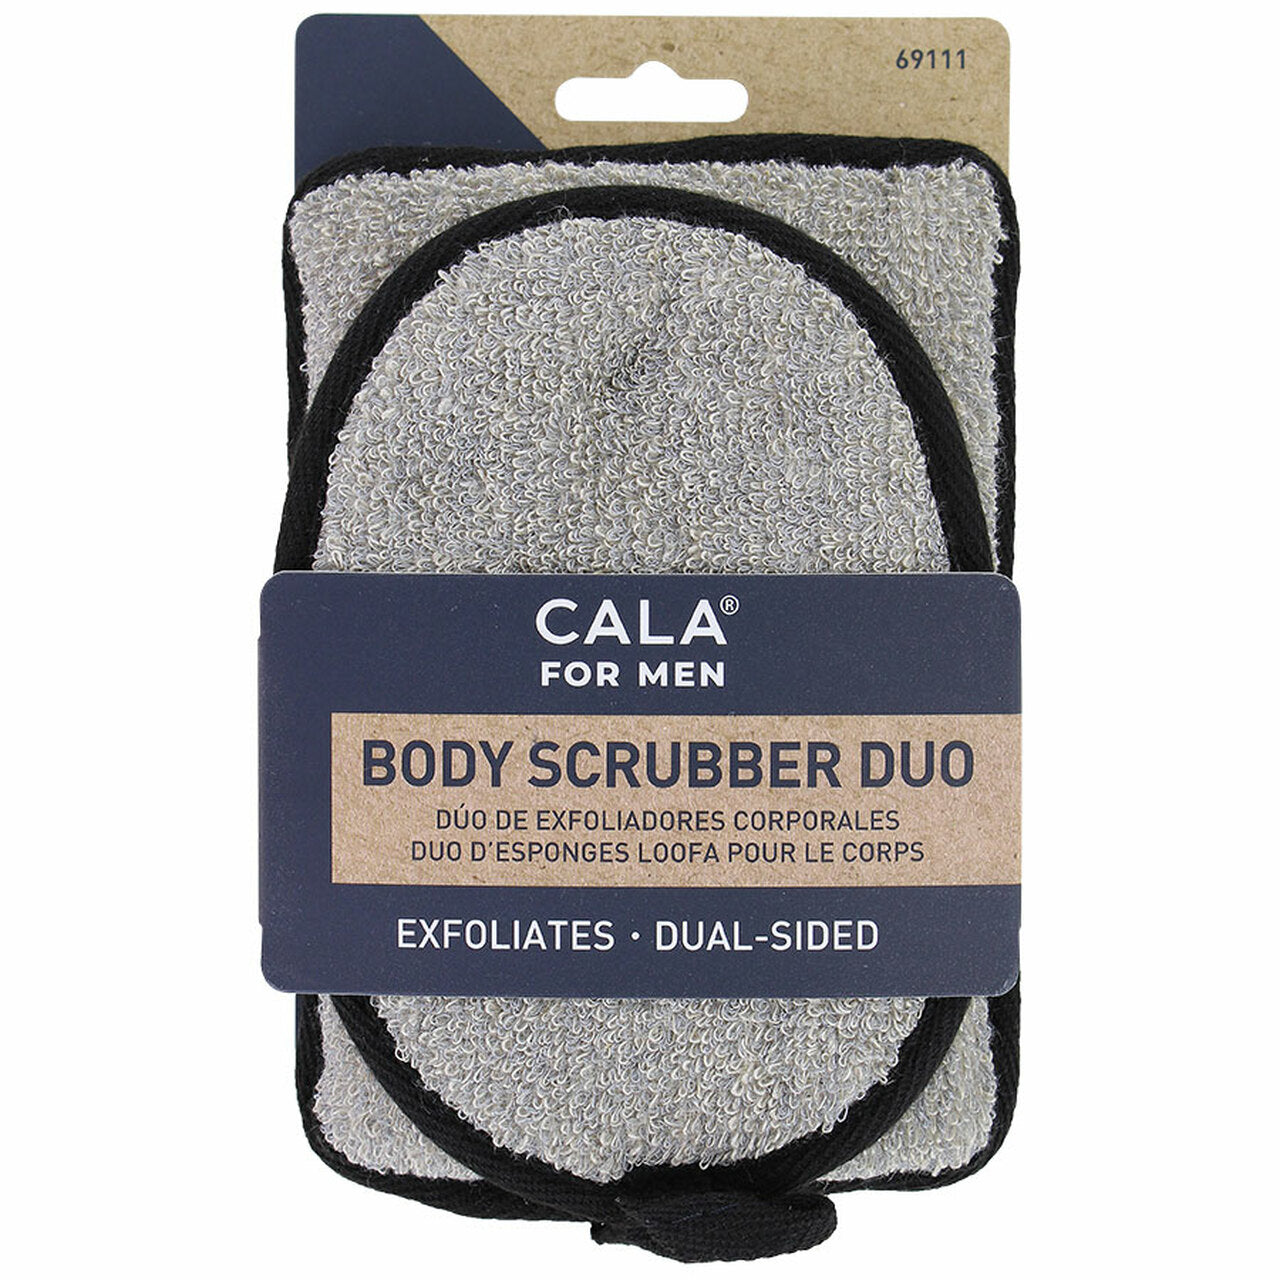 Cala for Men Body Scrubber Duo